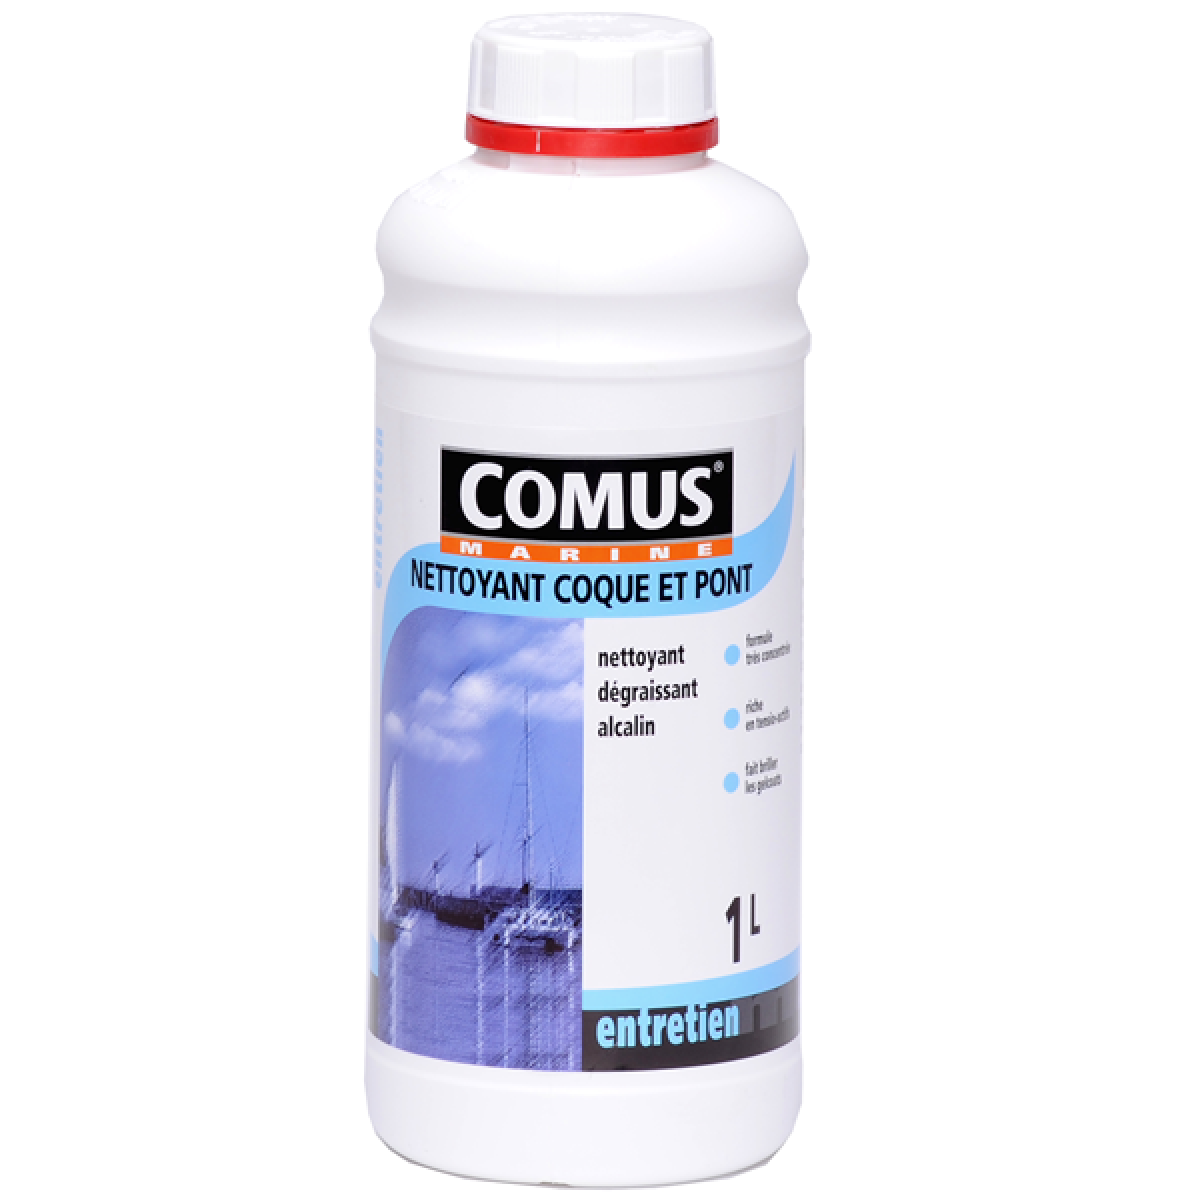 Comus - NETTOYANT COQUE & PONT 1 L - Nettoyant dégraissant alcalin - COMUS MARINE - Peinture extérieure